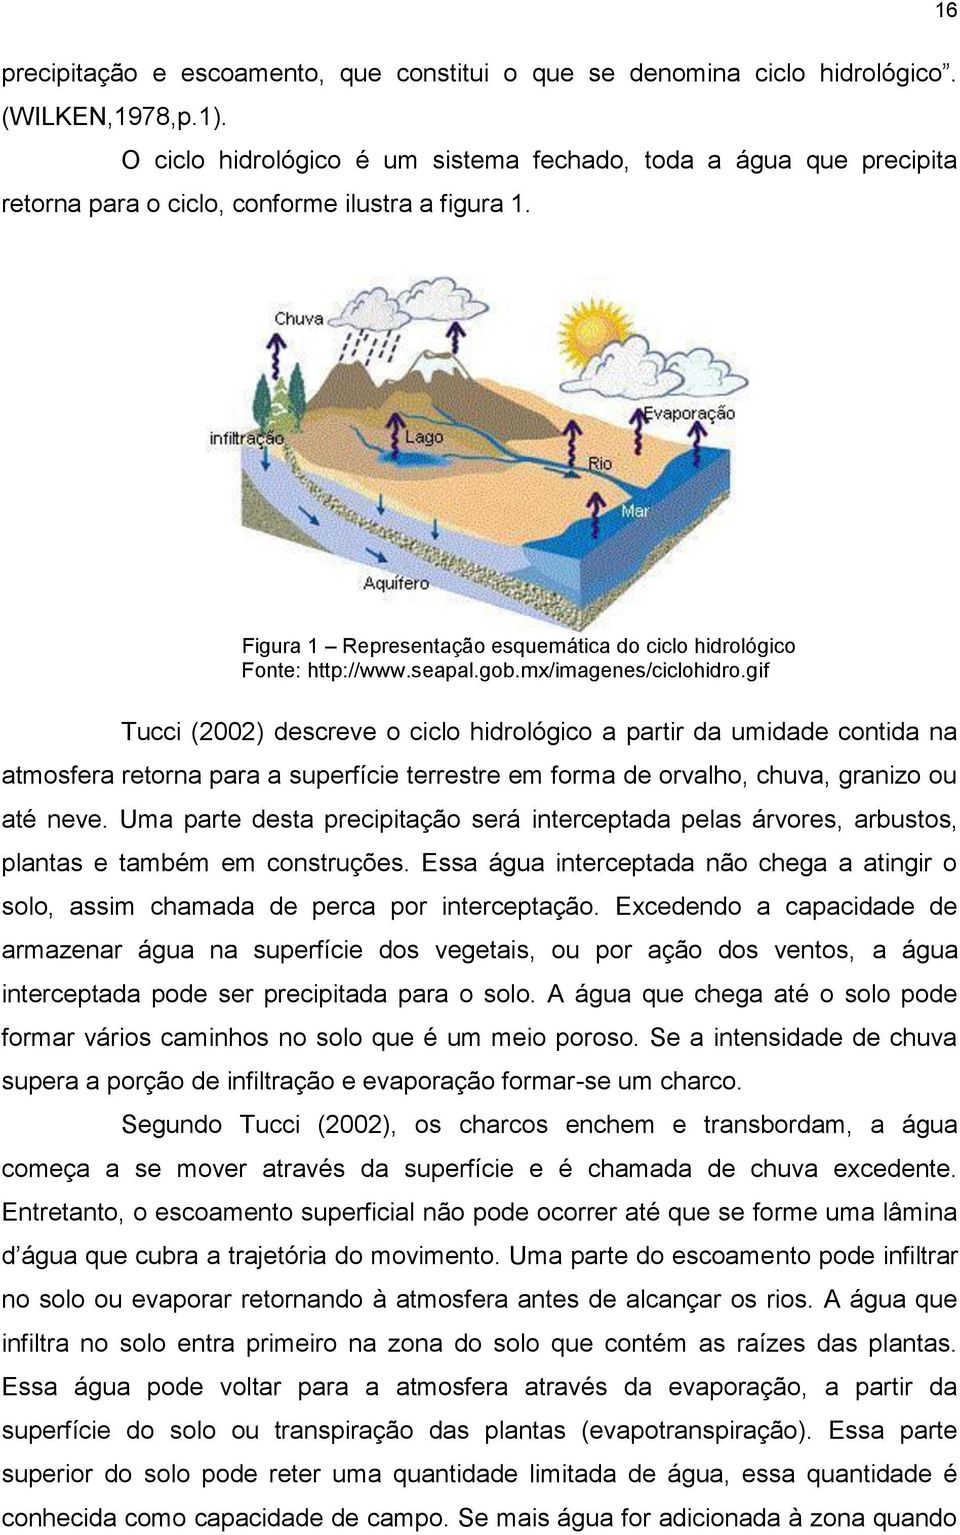 gob.mx/imagenes/ciclohidro.gif Tucci (2002) descreve o ciclo hidrológico a partir da umidade contida na atmosfera retorna para a superfície terrestre em forma de orvalho, chuva, granizo ou até neve.